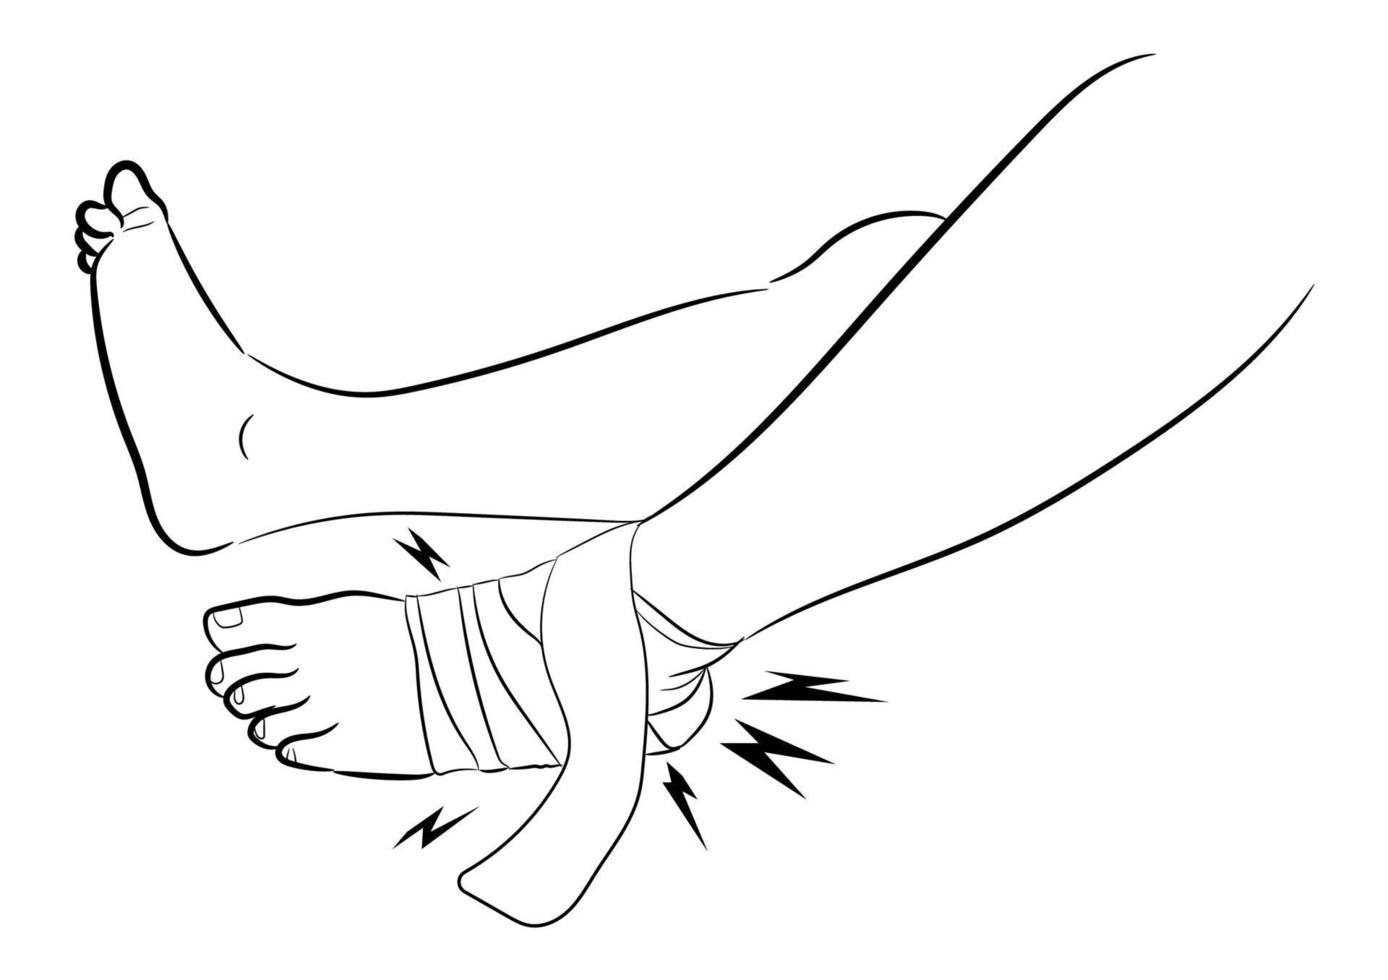 bendaggio della caviglia a causa del legamento della caviglia infortunata, illustrazione vettoriale di progettazione grafica su sfondo bianco